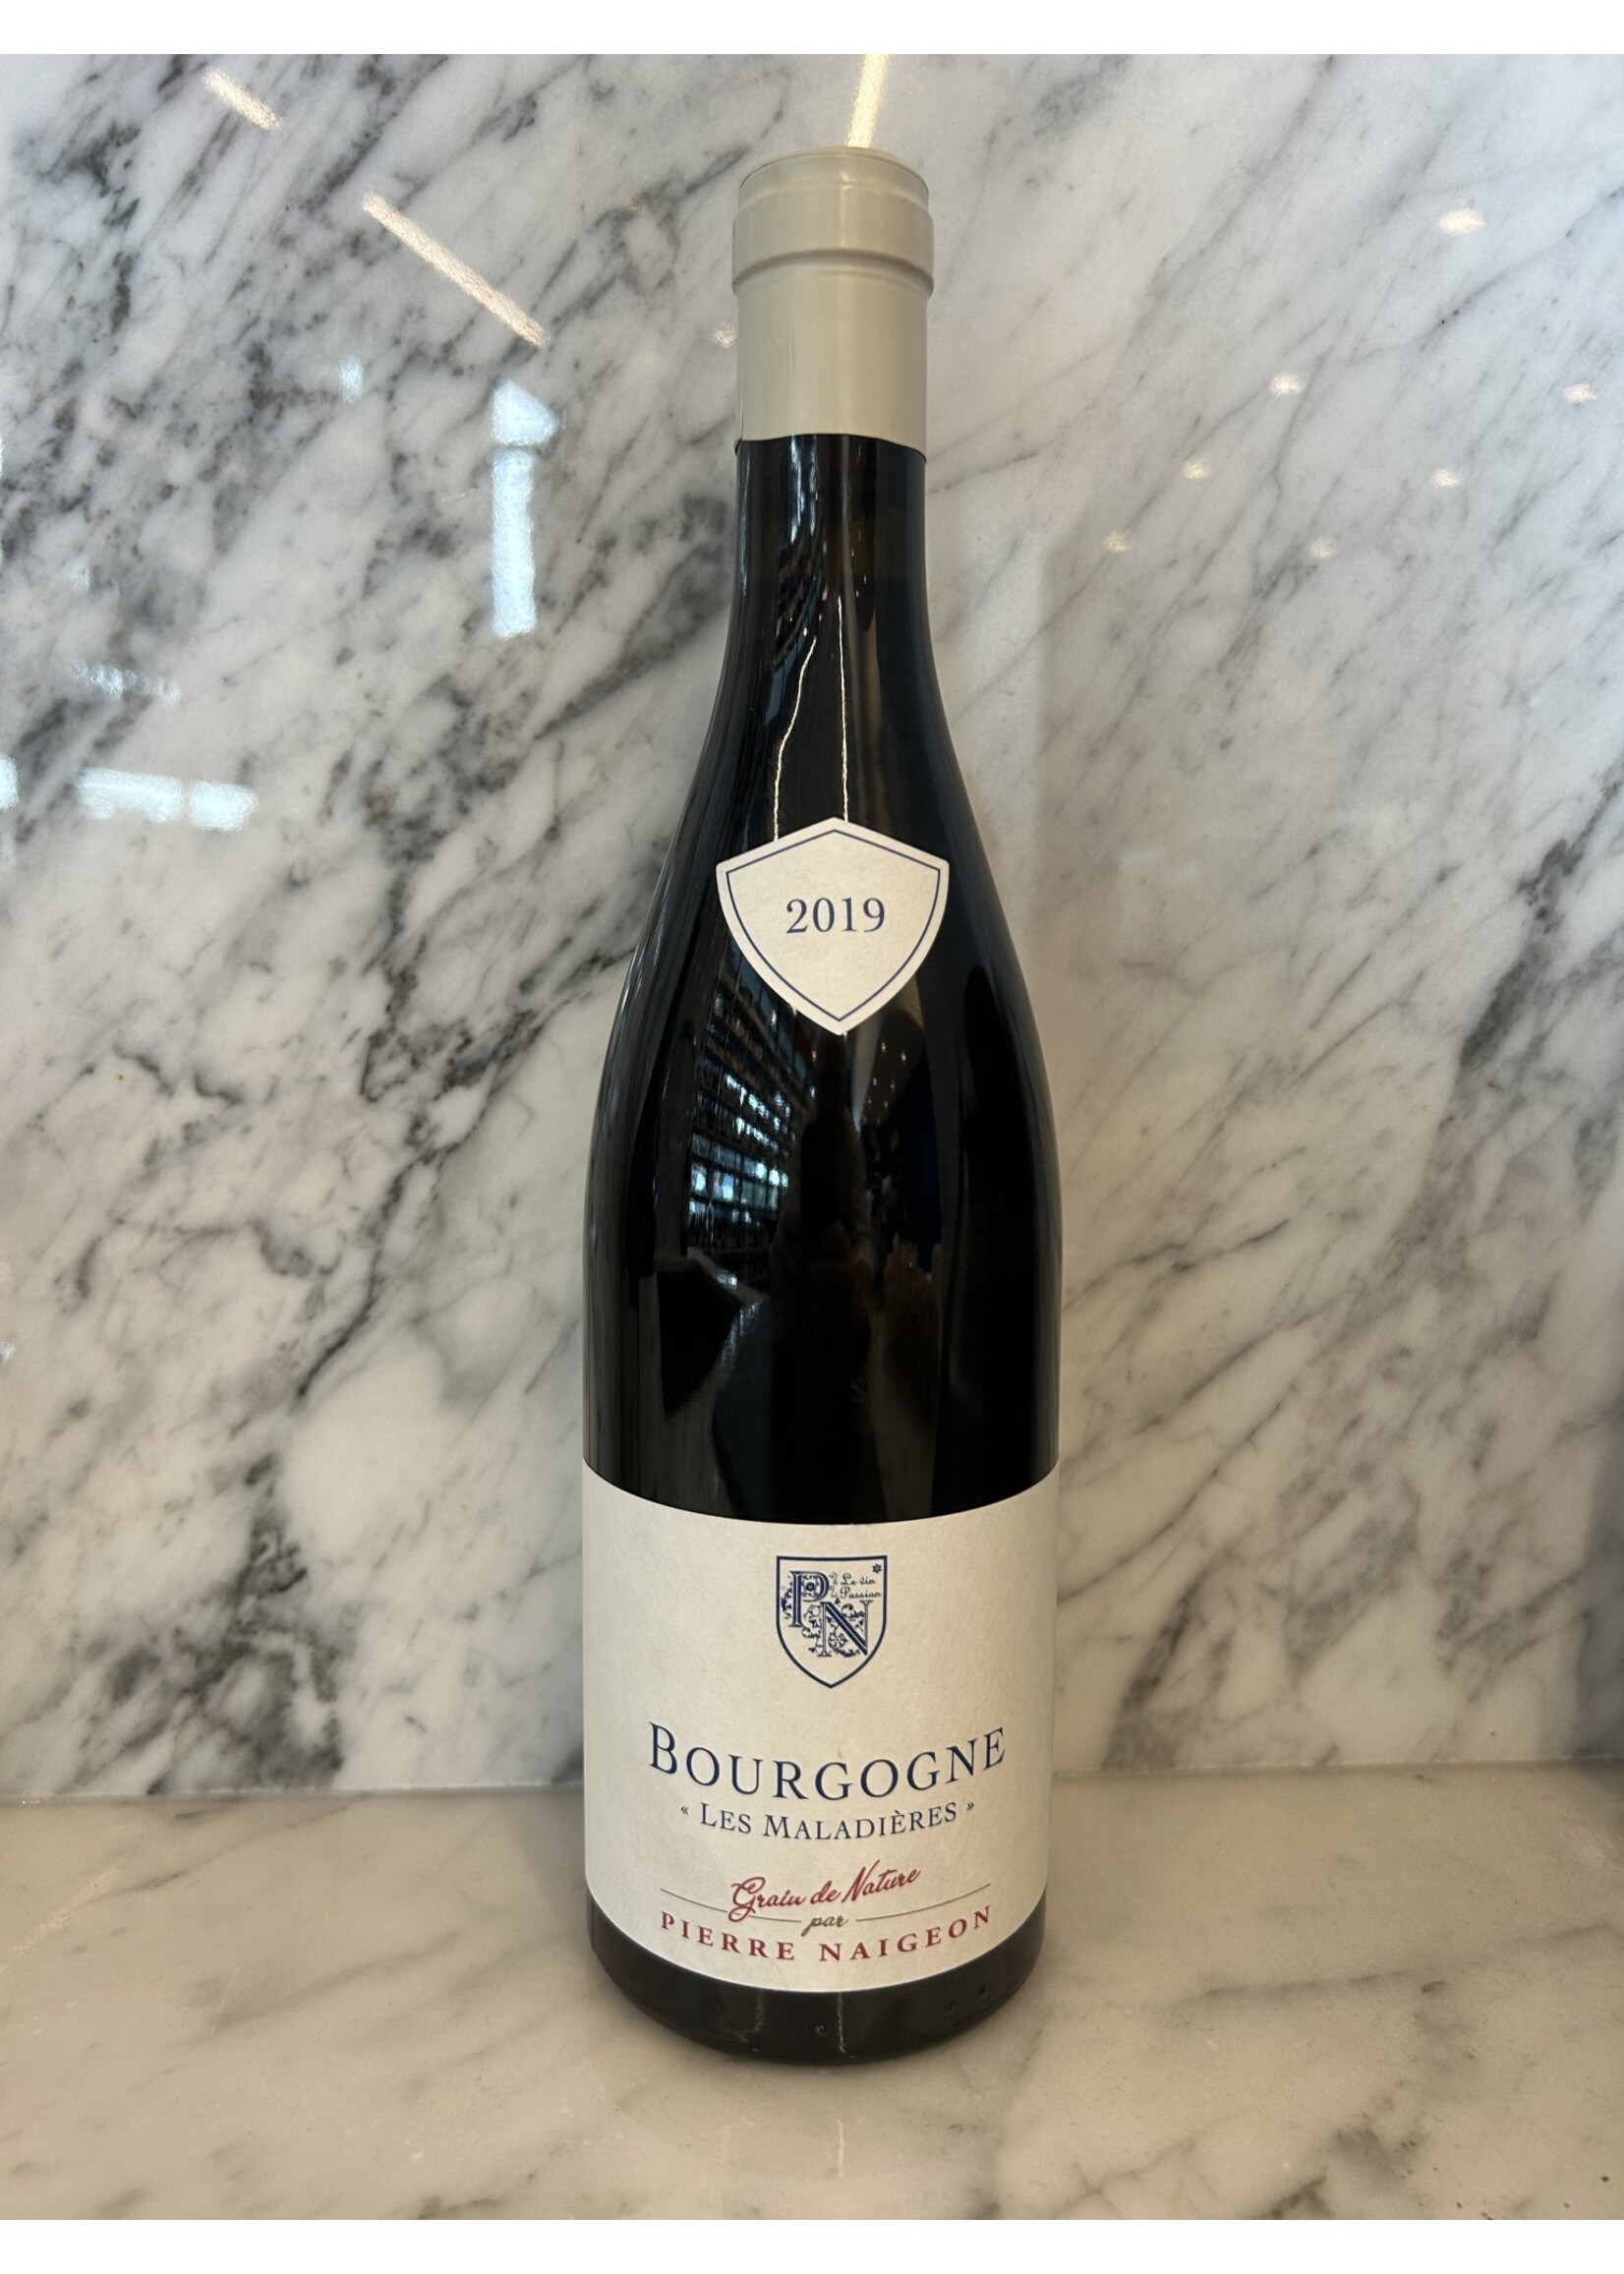 Pierre Naigeon Pierre Naigeon 2019 Bourgogne (Pinot Noir)  Les Maladiéres